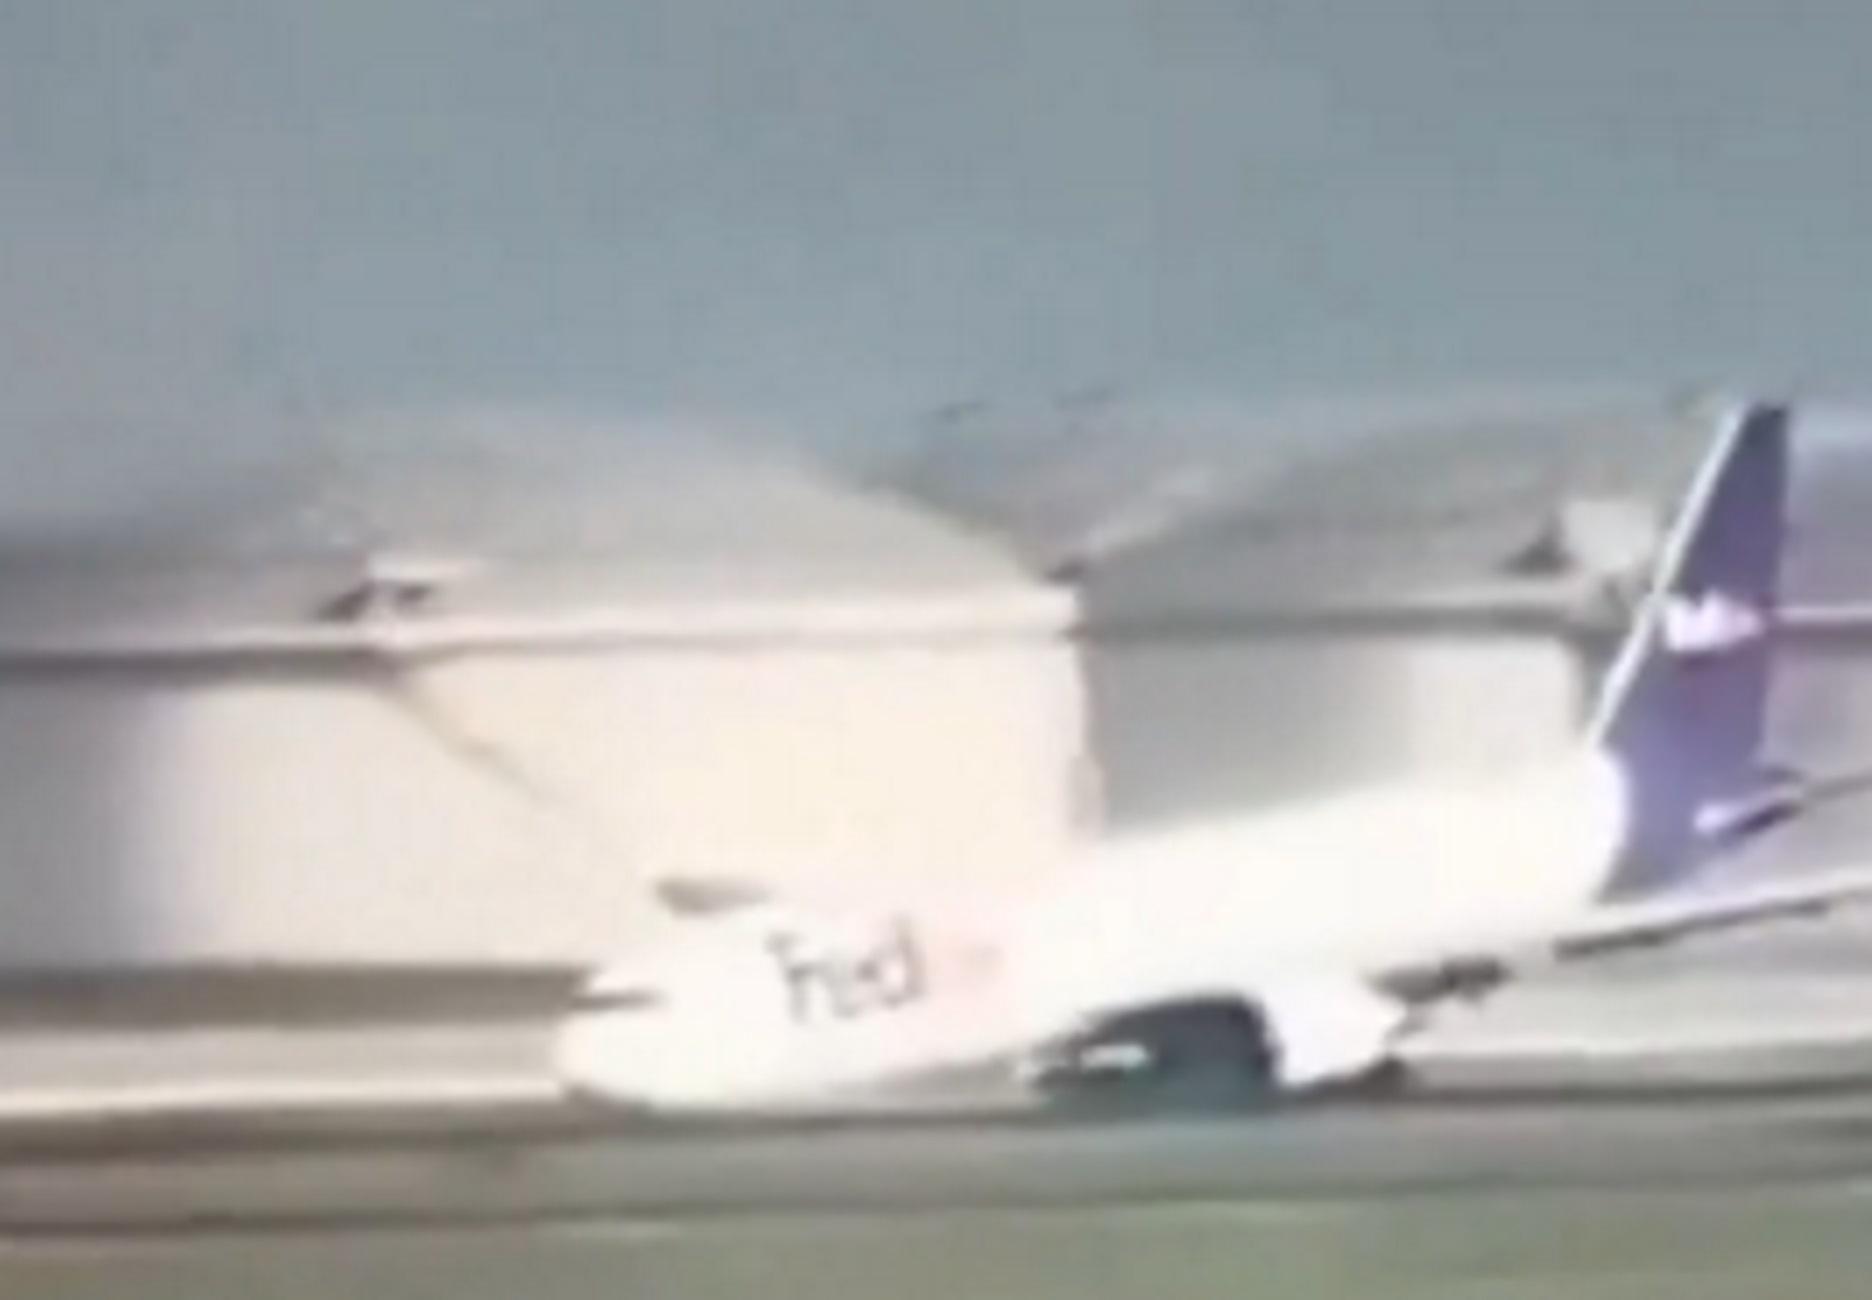 Τουρκία: Βίντεο με αεροπλάνο Boeing 767 να κάνει αναγκαστική προσγείωση με την άτρακτο στην Κωνσταντινούπολη